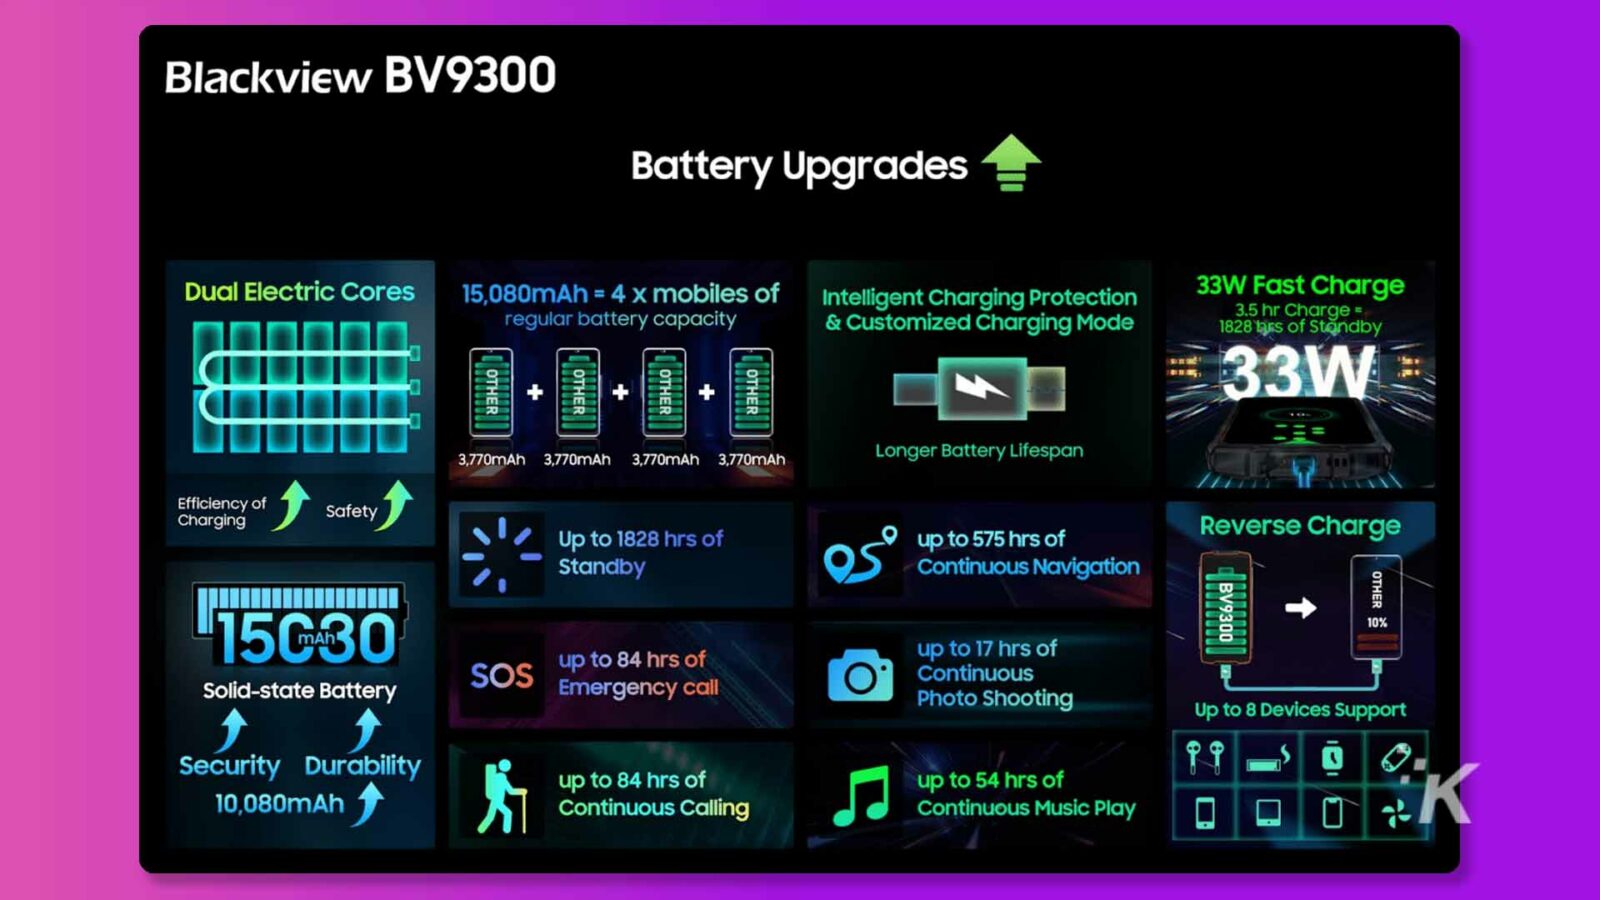 Esta imagem mostra os recursos e benefícios da bateria Blackview BV9300, que possui capacidade de 15.080mAh e carga rápida de 33W com modo de carregamento personalizado, proporcionando maior duração da bateria, carregamento eficiente e até 1828 horas em standby. Texto completo: Blackview BV9300 Atualizações de bateria Núcleos elétricos duplos 15.080mAh = 4 x celulares de proteção de carregamento inteligente 33W Carga rápida capacidade normal da bateria e Modo de carregamento personalizado Carga de 3,5 horas = 1828 tiros em espera 33W OUTRO OUTRO OUTRO + + + MA 3.770mAh 3.770 mAh 3.770mAh 3.770mAh Maior vida útil da bateria Eficiência de carregamento Segurança Até 1828 horas ou até 575 horas de carga reversa Navegação contínua em espera OUTRO BV9300 15G30 até 84 horas de bateria de estado sólido SOS até 17 horas de chamada de emergência O Foto contínua Capturando até 8 dispositivos Suporta segurança Durabilidade 10.080 mAh até 84 horas ou até 54 horas de chamadas contínuas Reprodução contínua de música